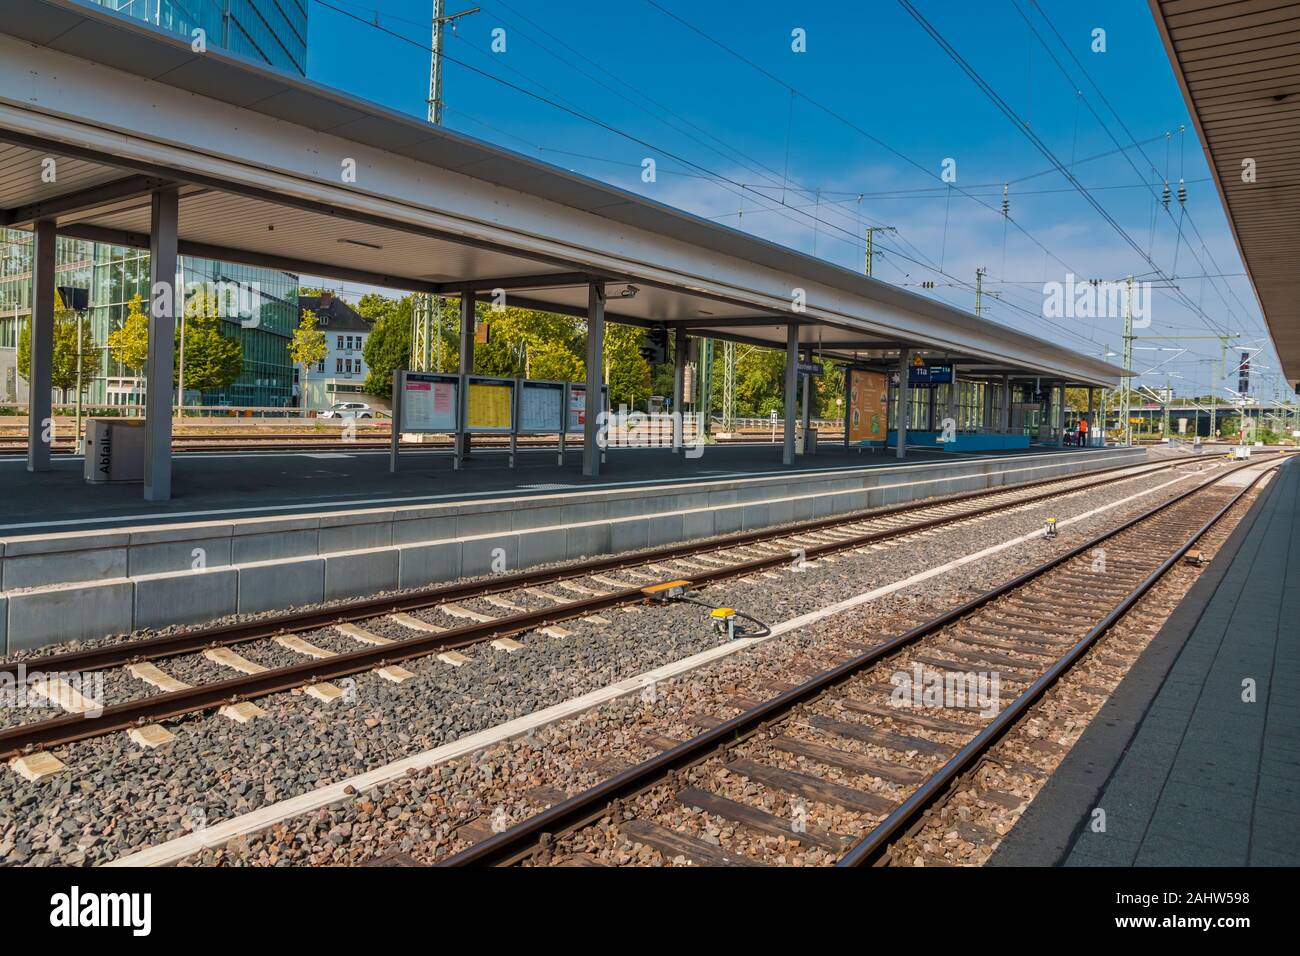 Tolle Aussicht auf eine leere Plattform der Hauptbahnhof in Mannheim, Deutschland an einem schönen Tag mit blauem Himmel. Stockfoto